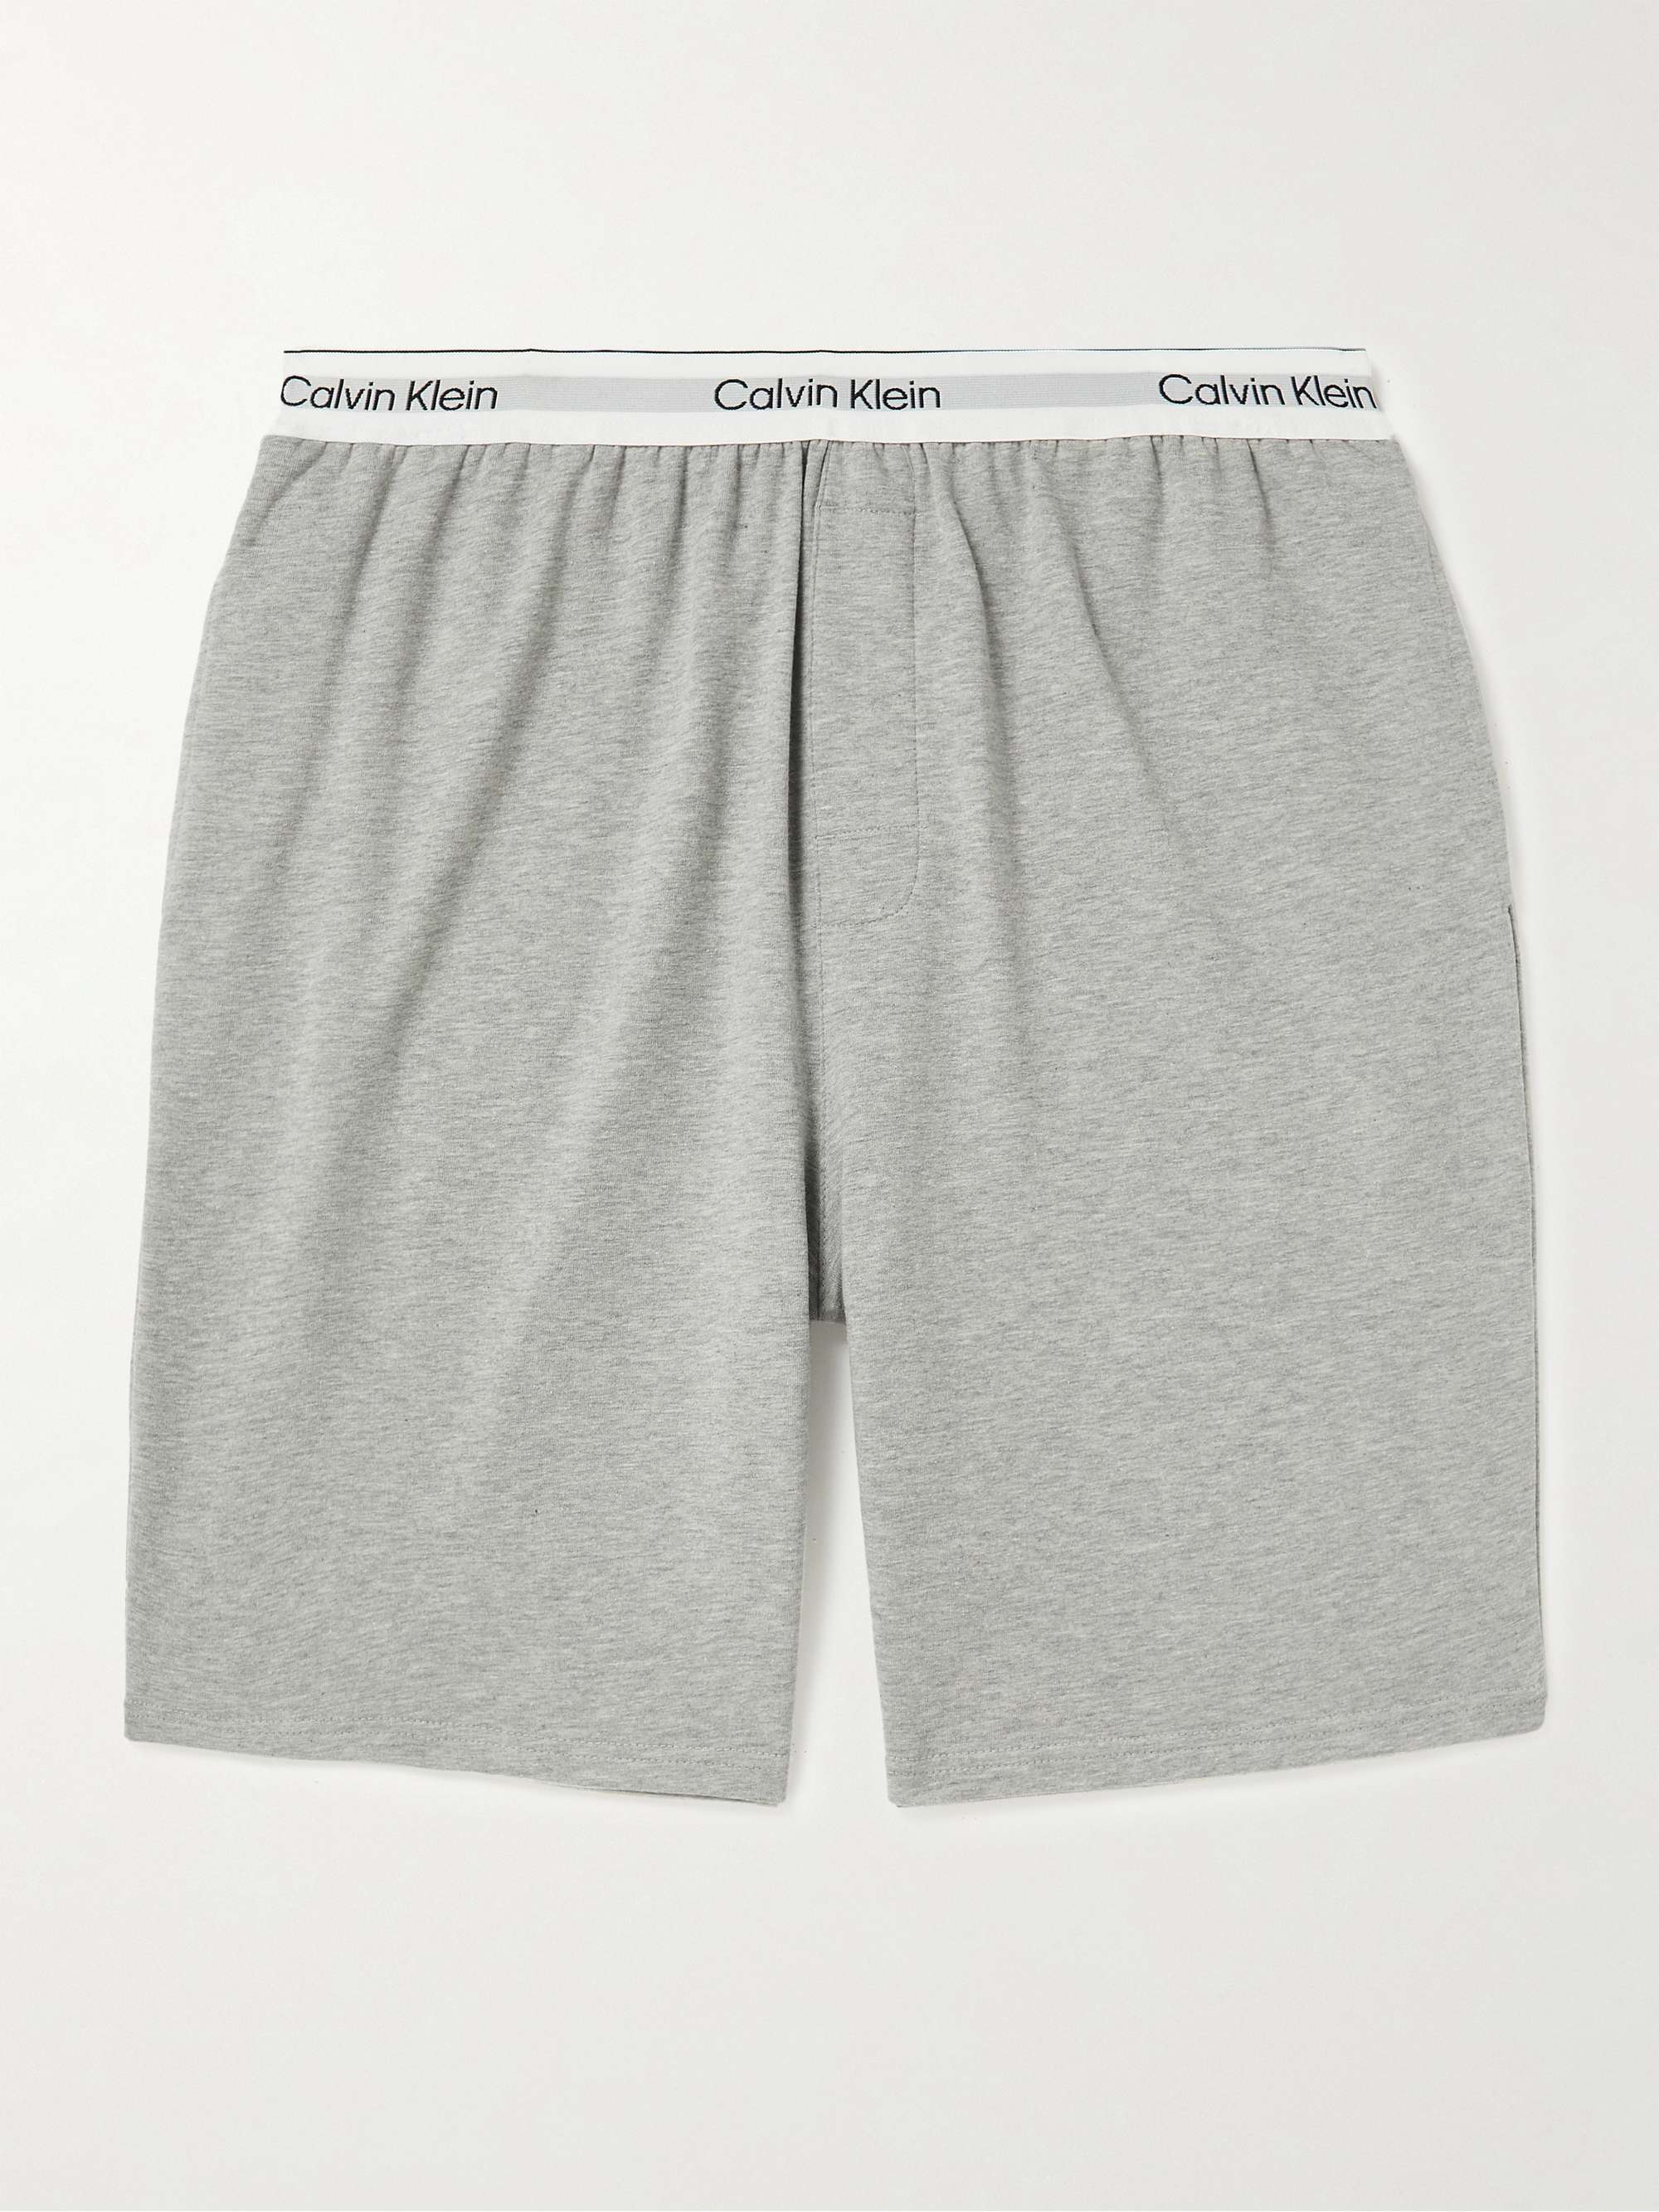 CALVIN KLEIN UNDERWEAR Cotton-Blend Jersey Pyjama Shorts | MR PORTER